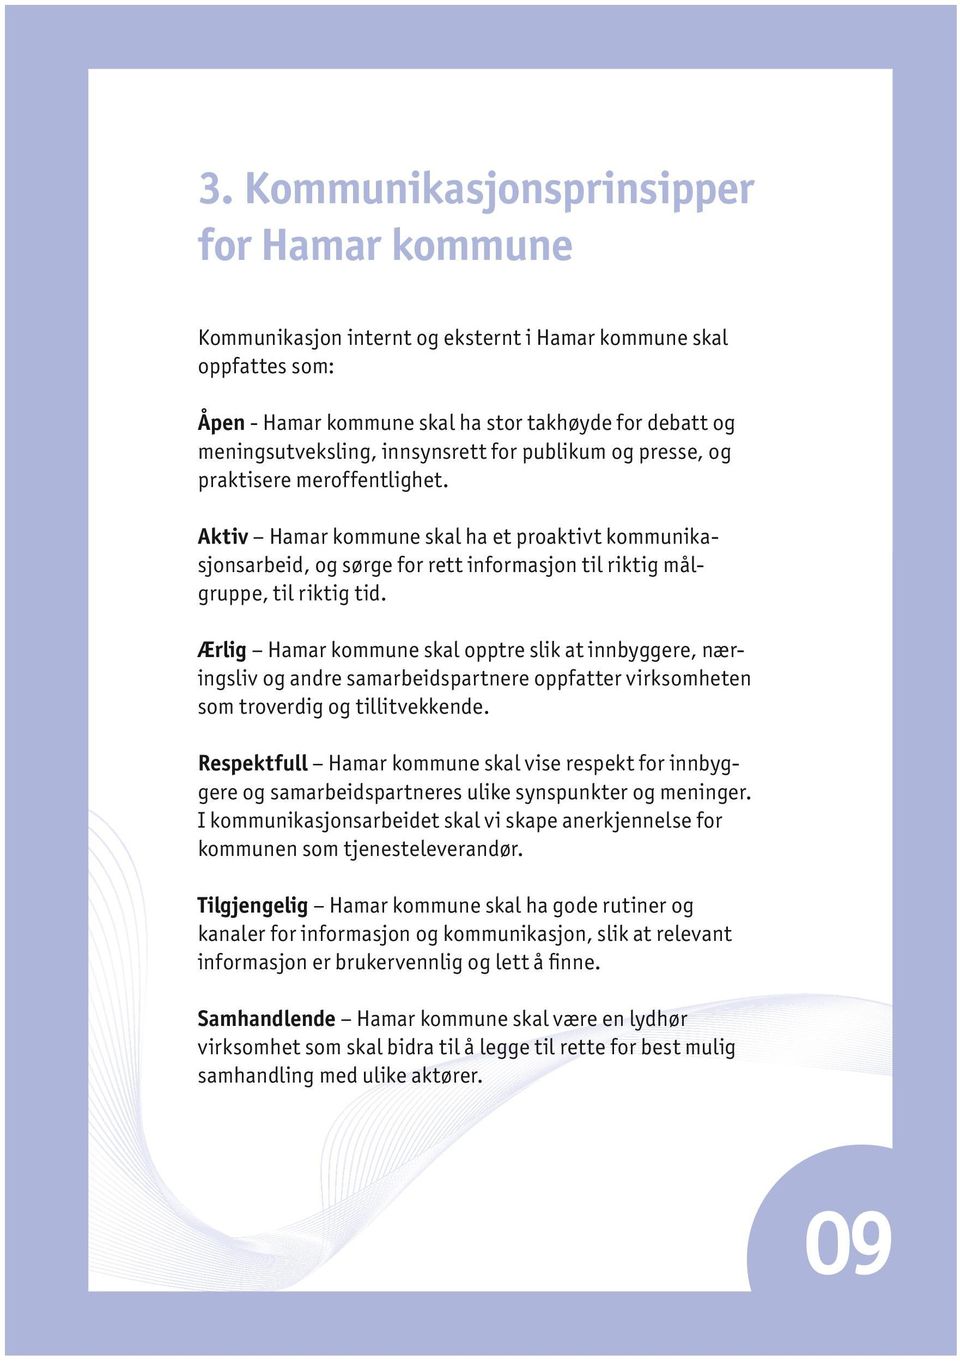 Ærlig Hamar kommune skal opptre slik at innbyggere, næringsliv og andre samarbeidspartnere oppfatter virksomheten som troverdig og tillitvekkende.